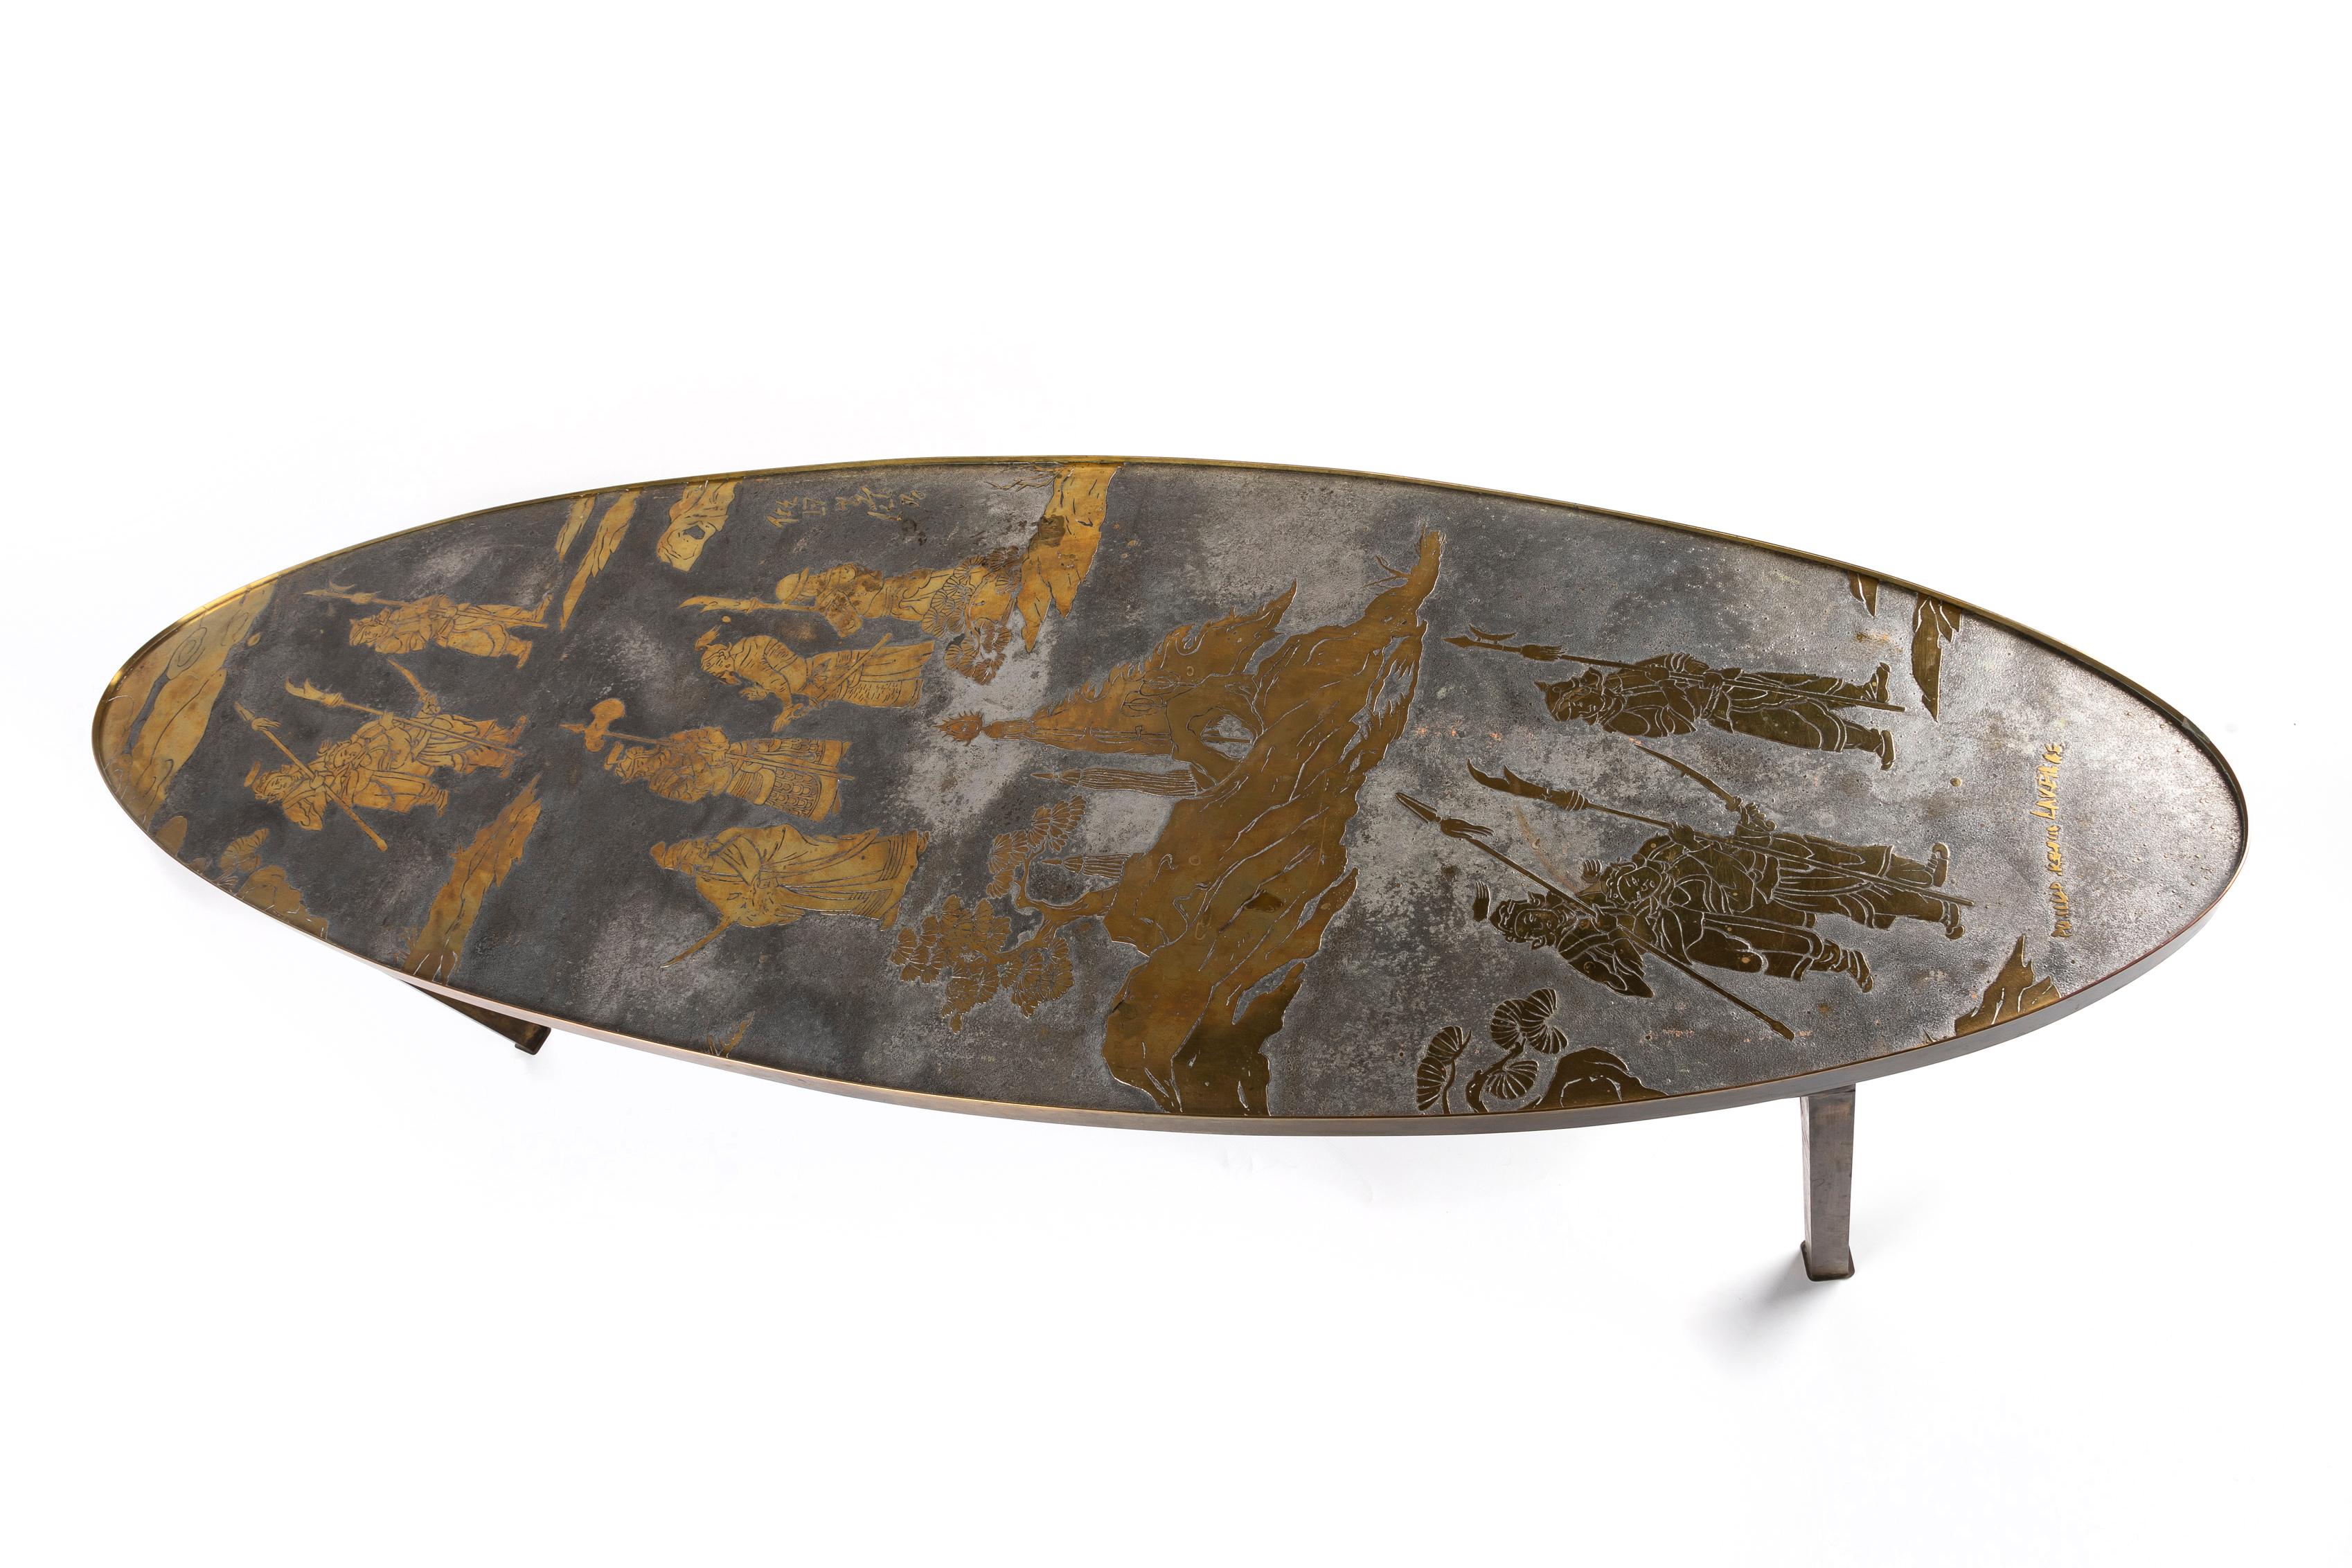 Table basse de forme ovale en bronze gravé, conçue par Philip et Kelvin Laverne. Cette table basse unique est en deux tons représentant des figures de chinoiserie.